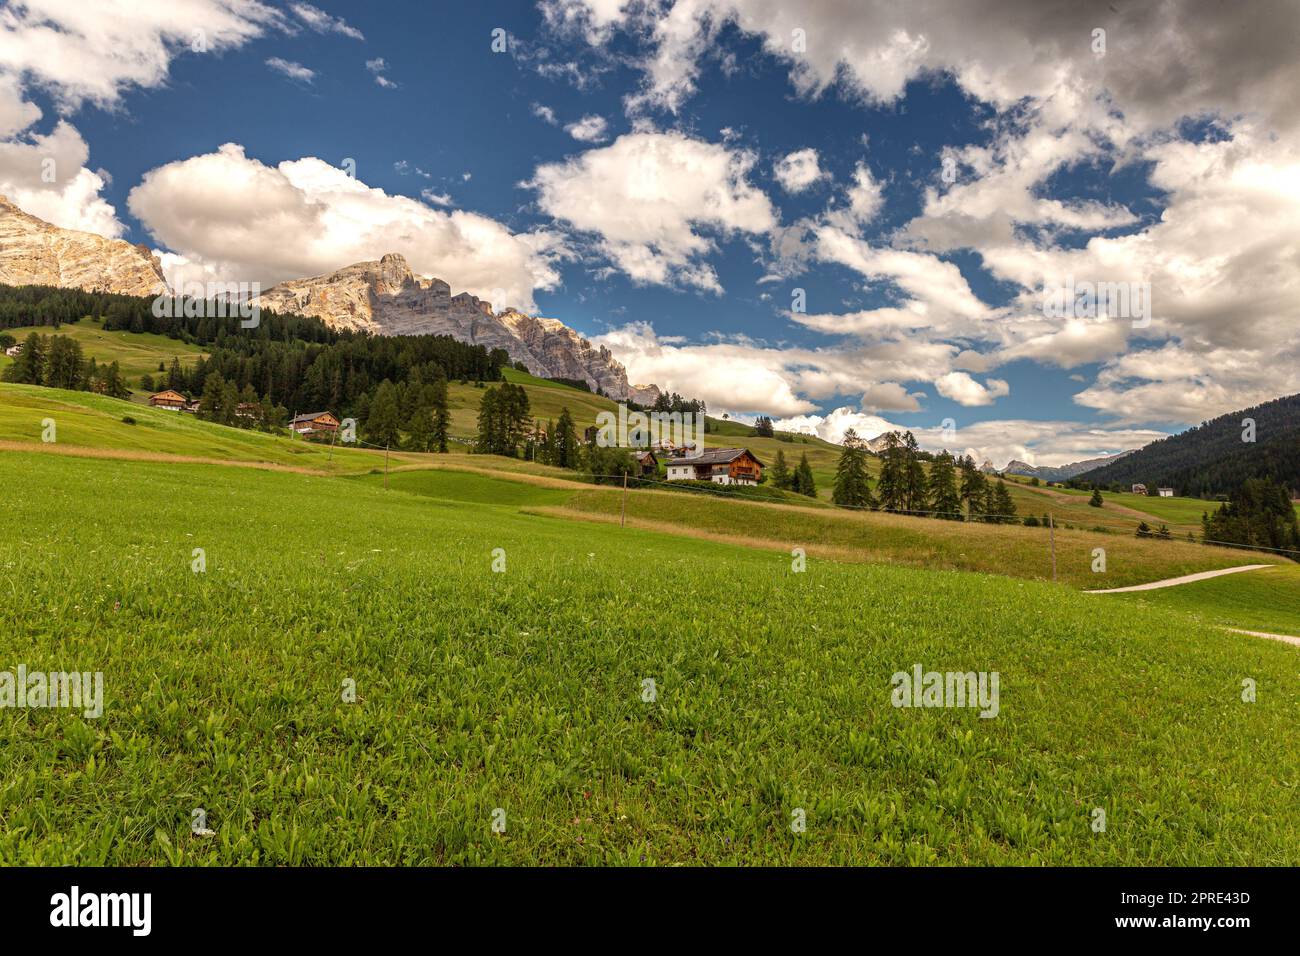 Dolomiti Alps in Alta Badia landscape view Stock Photo